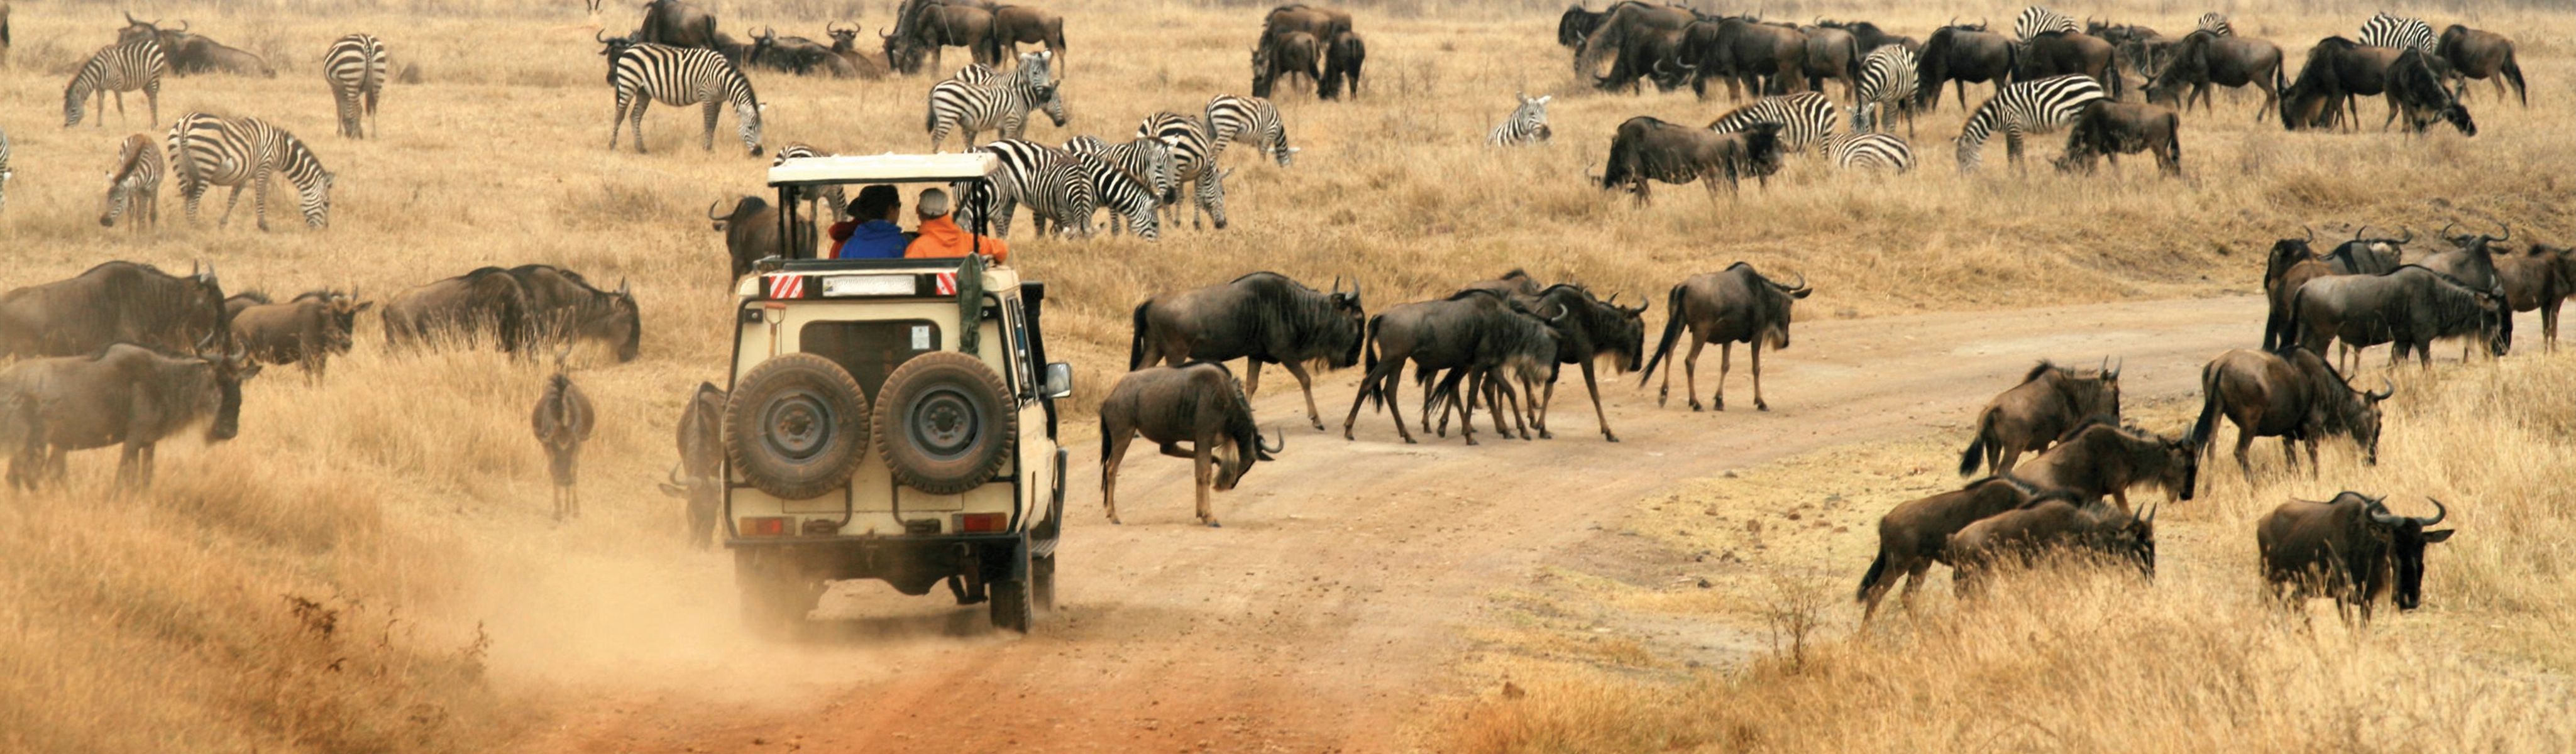 wildlife tours safari